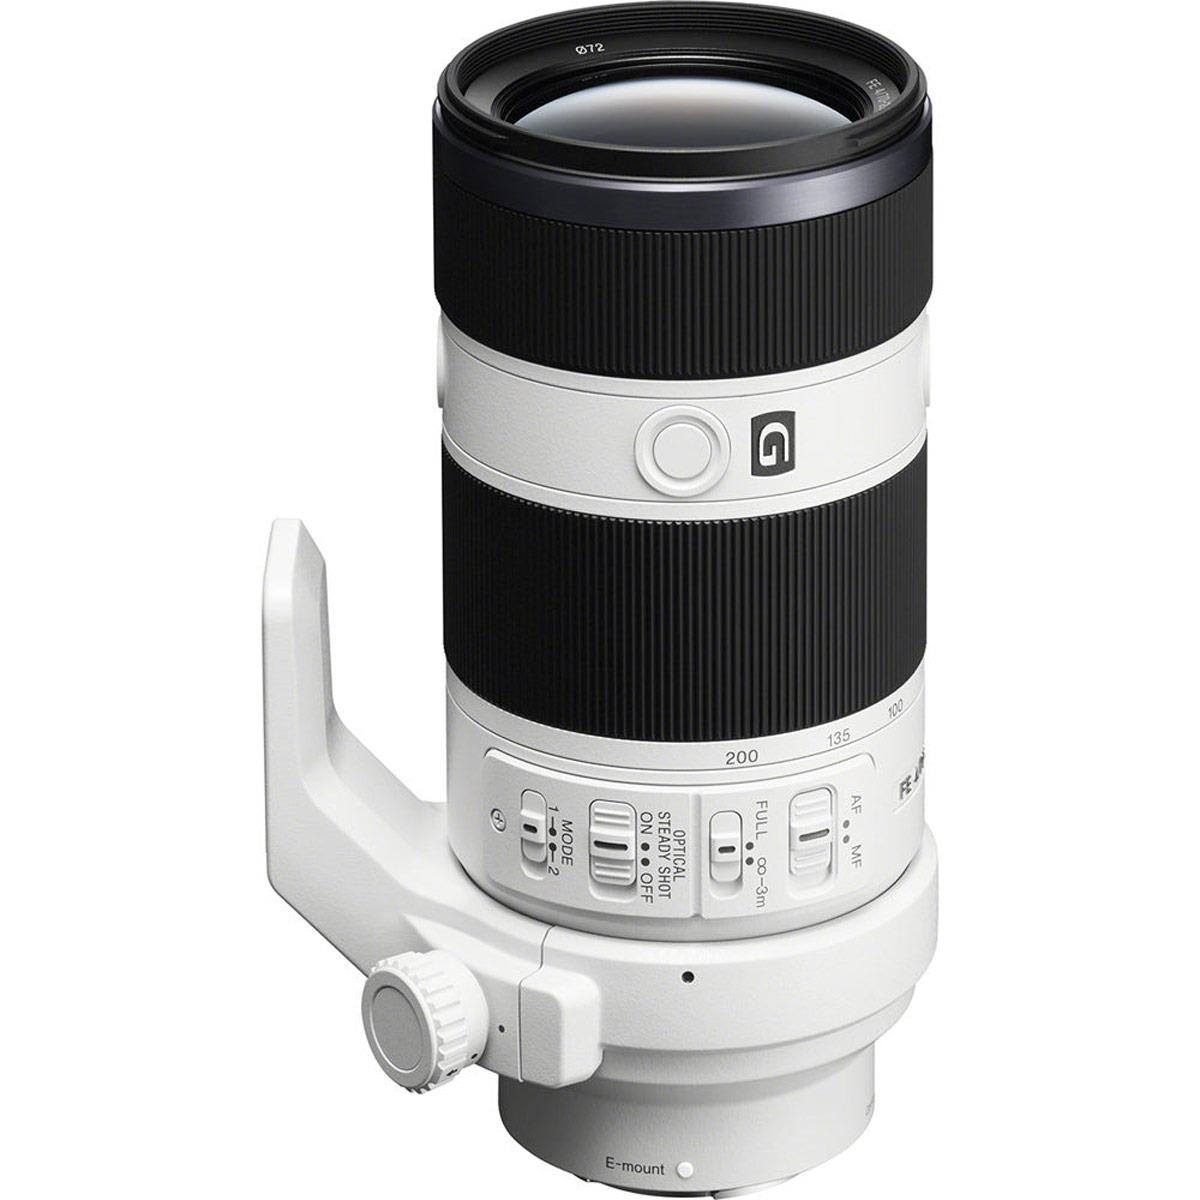 Image of Sony FE 70-200mm f/4.0 G OSS Lens for Sony E